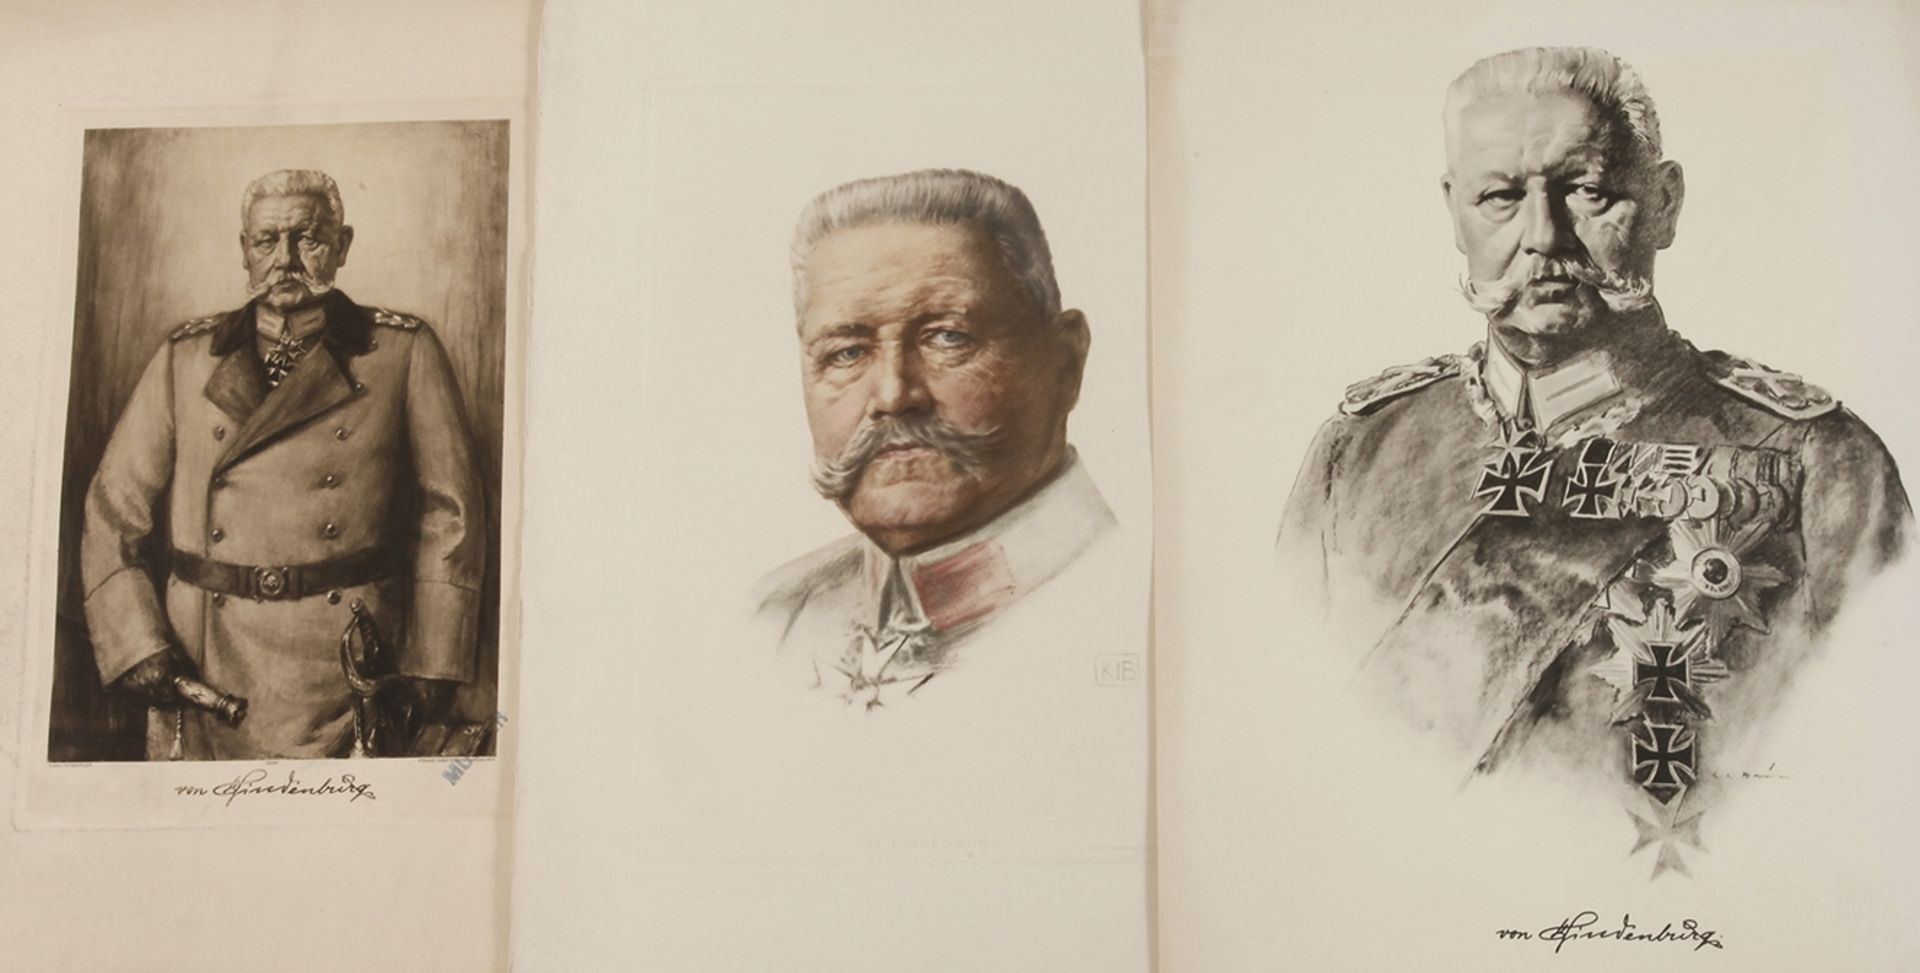 Drei Portraits Hindenburg um 1925, jeweils Chromolithographien Druck Franz Hanfstaengl München,